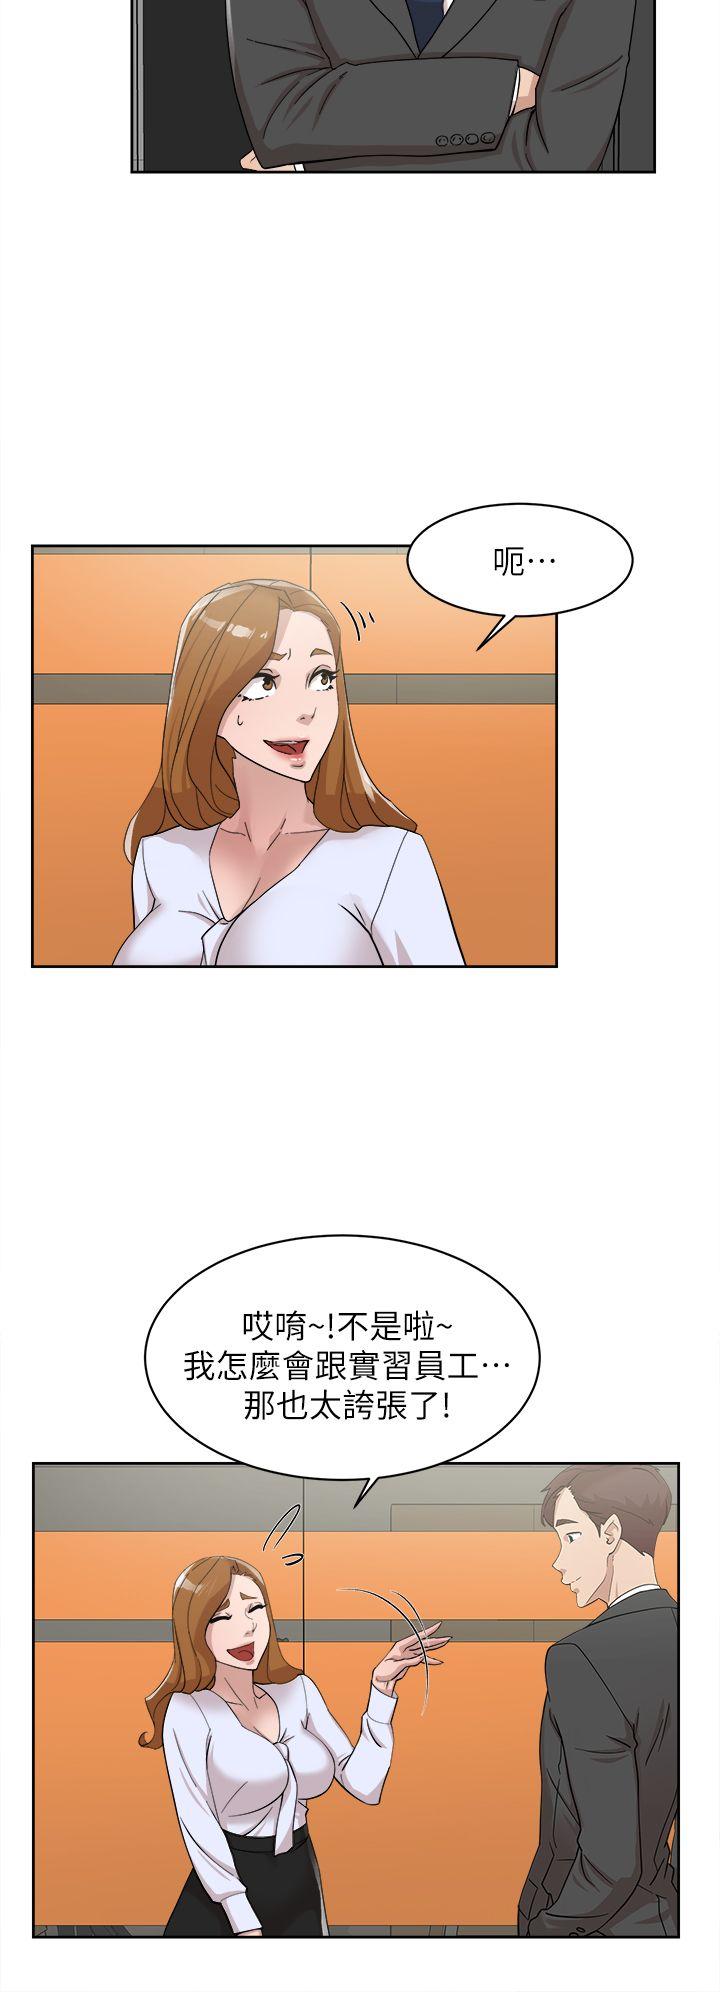 韩国污漫画 她的高跟鞋(無刪減) 第69话-你都知道了还能包容她吗? 5